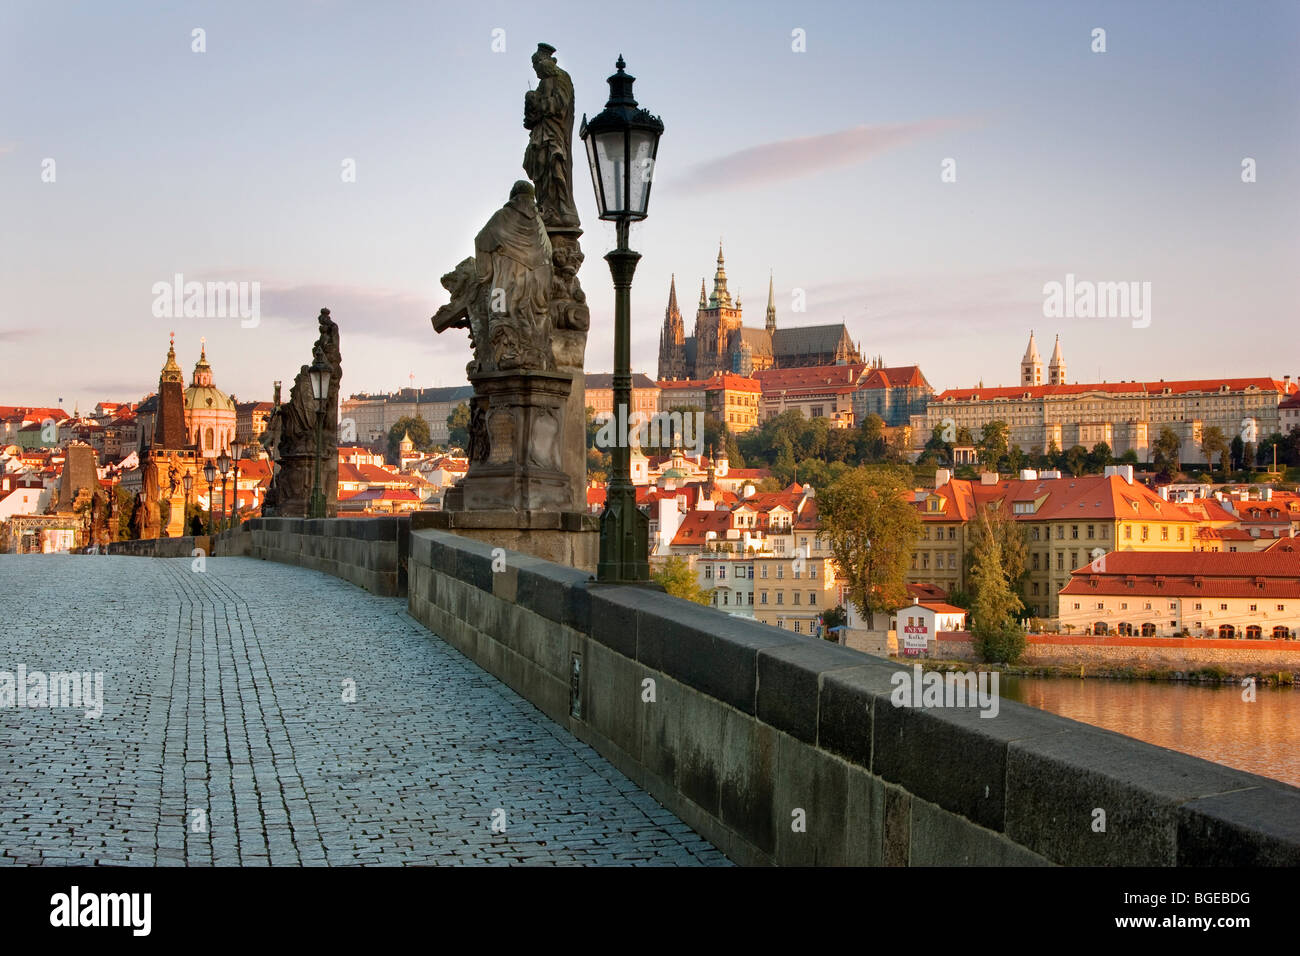 Ansicht der Karlsbrücke an der Moldau mit Prager Burg in der Ferne. Gedreht in Prag, Tschechien. Stockfoto